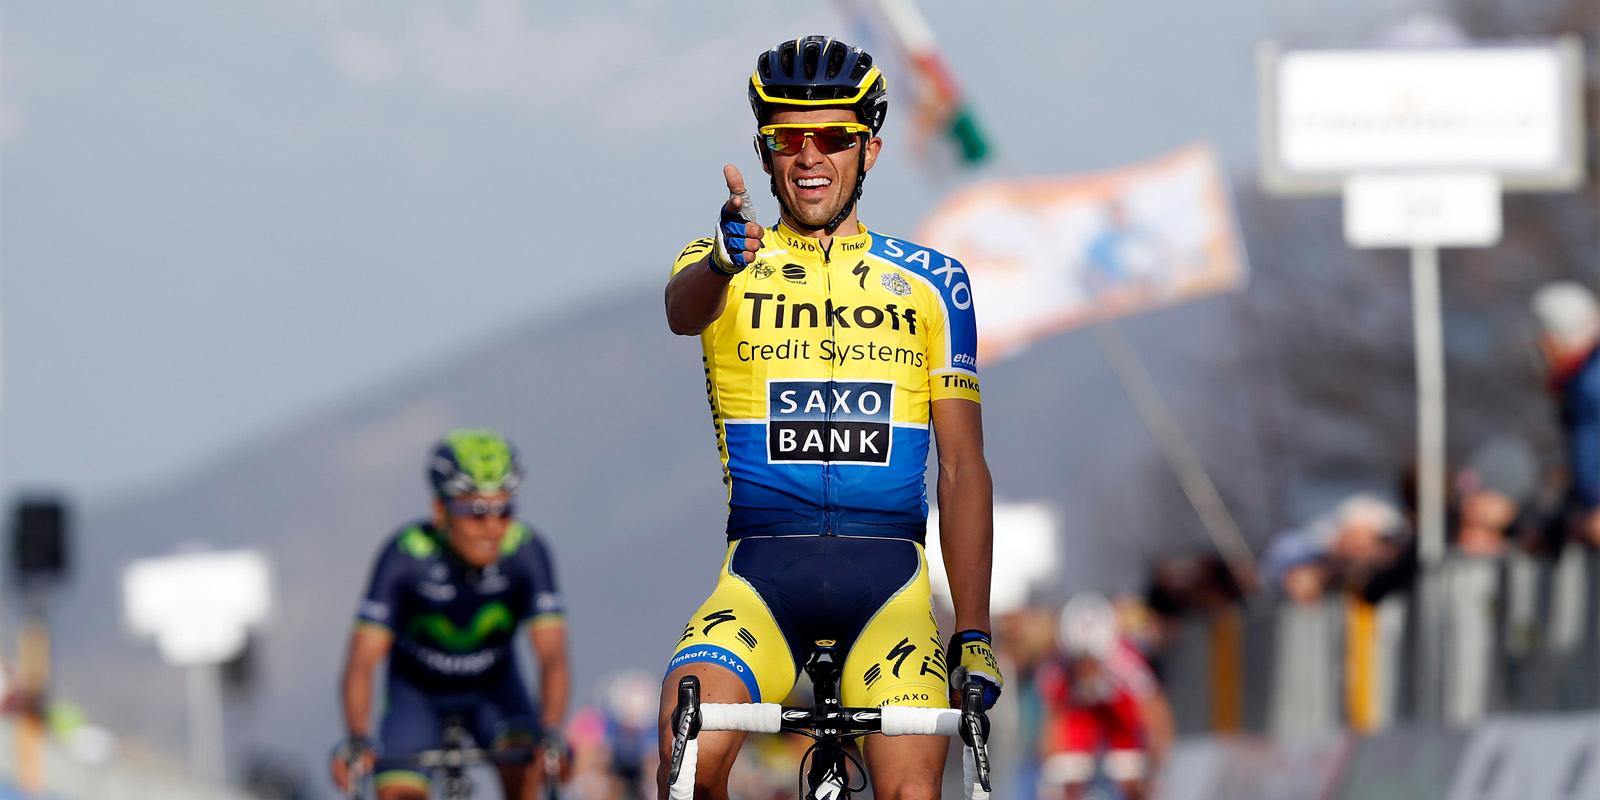 Legendarni Španac Alberto Contador završava karijeru